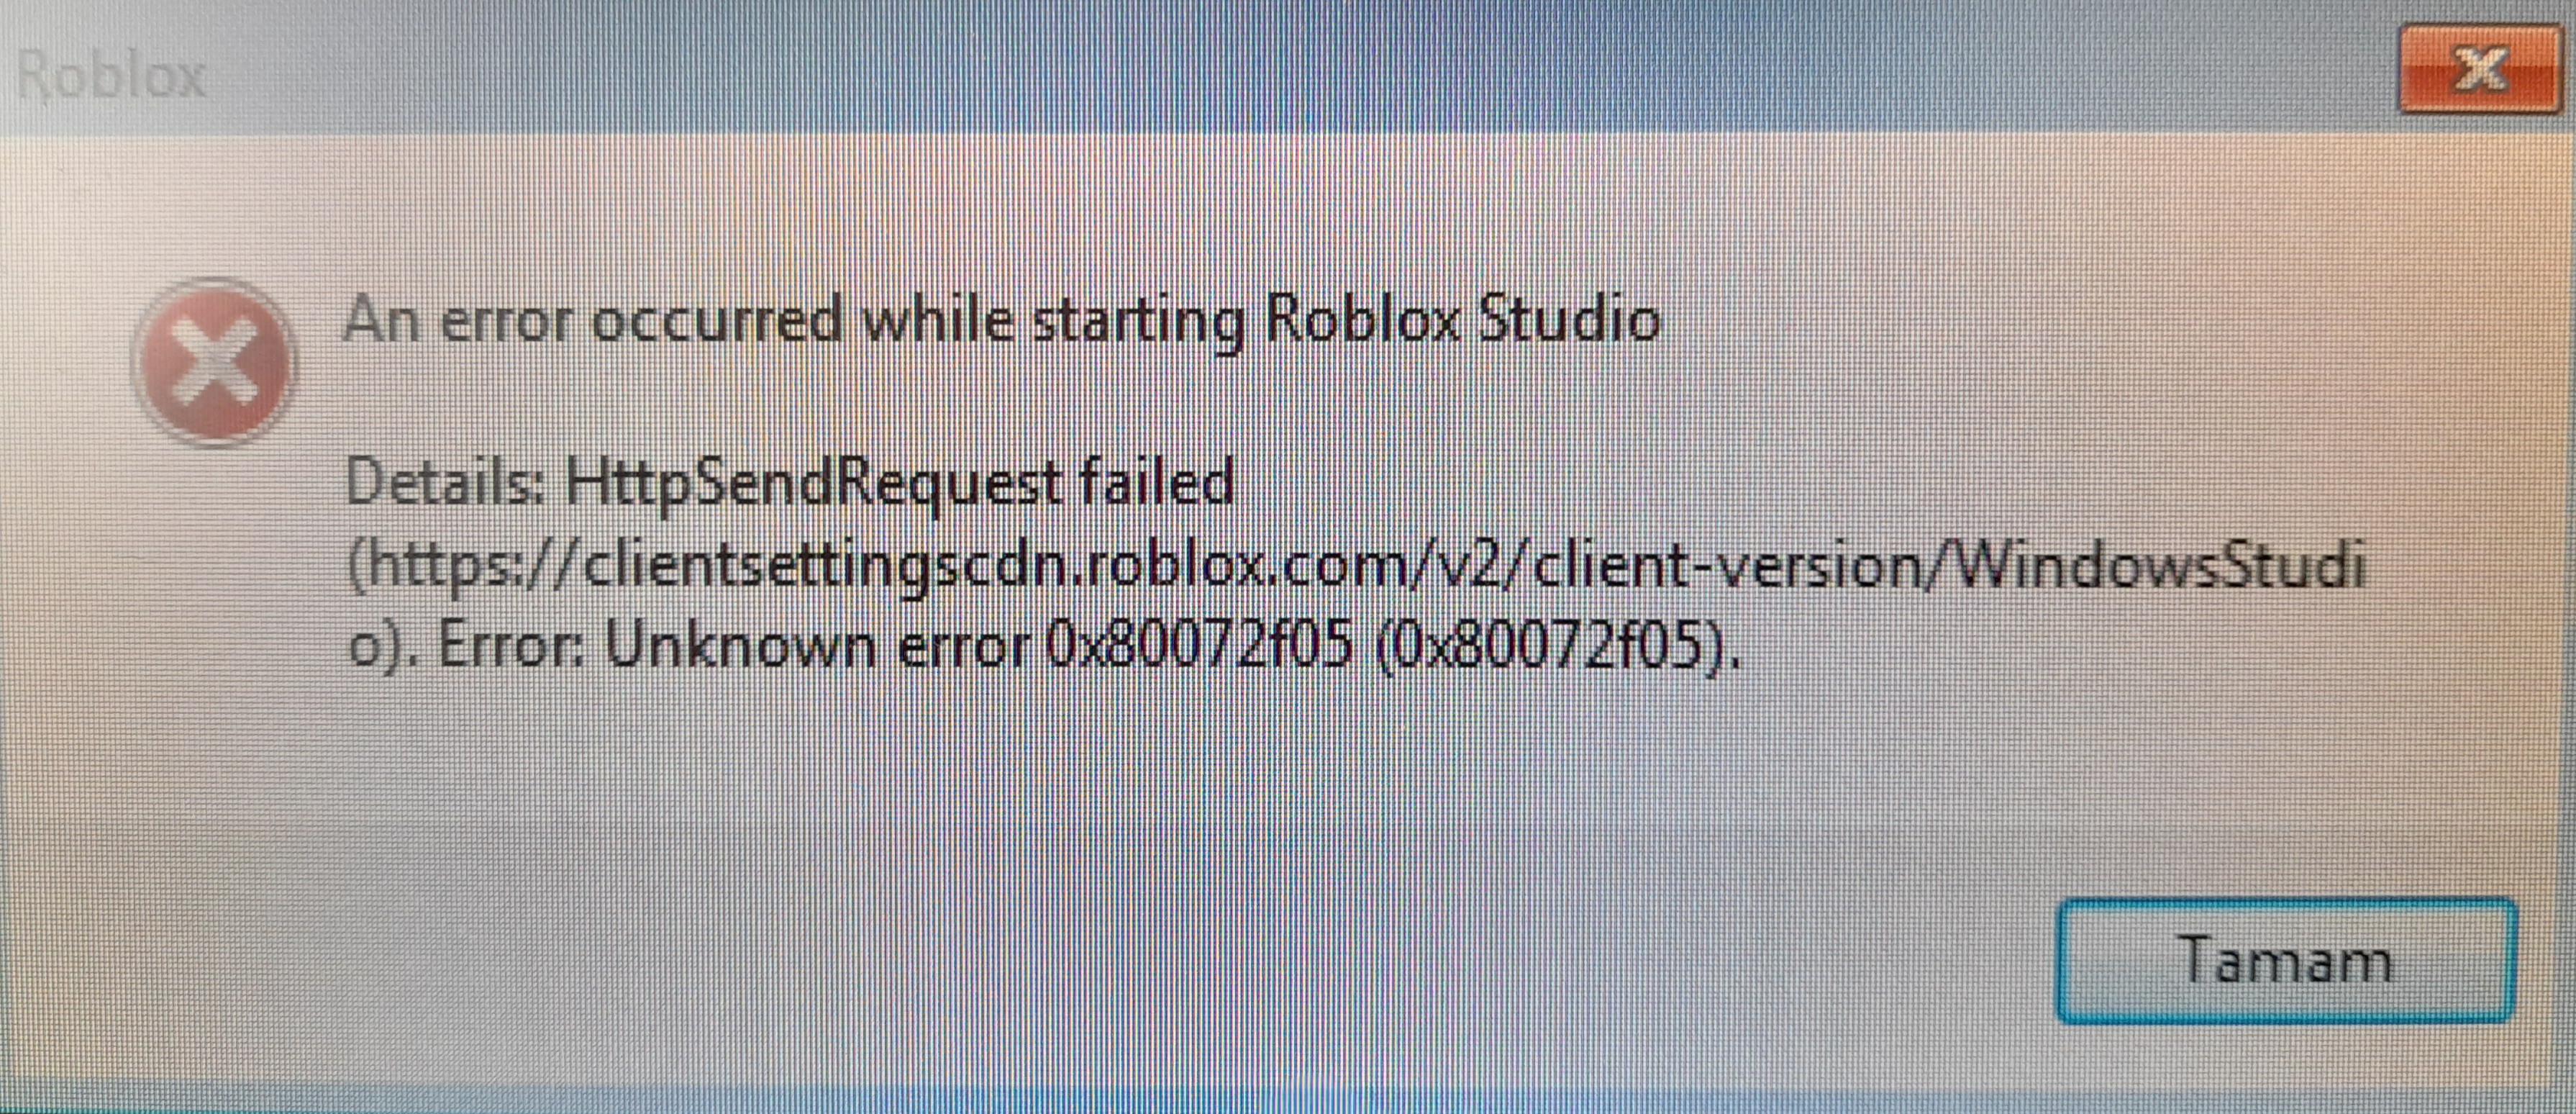 Roblox Studio açılmıyor